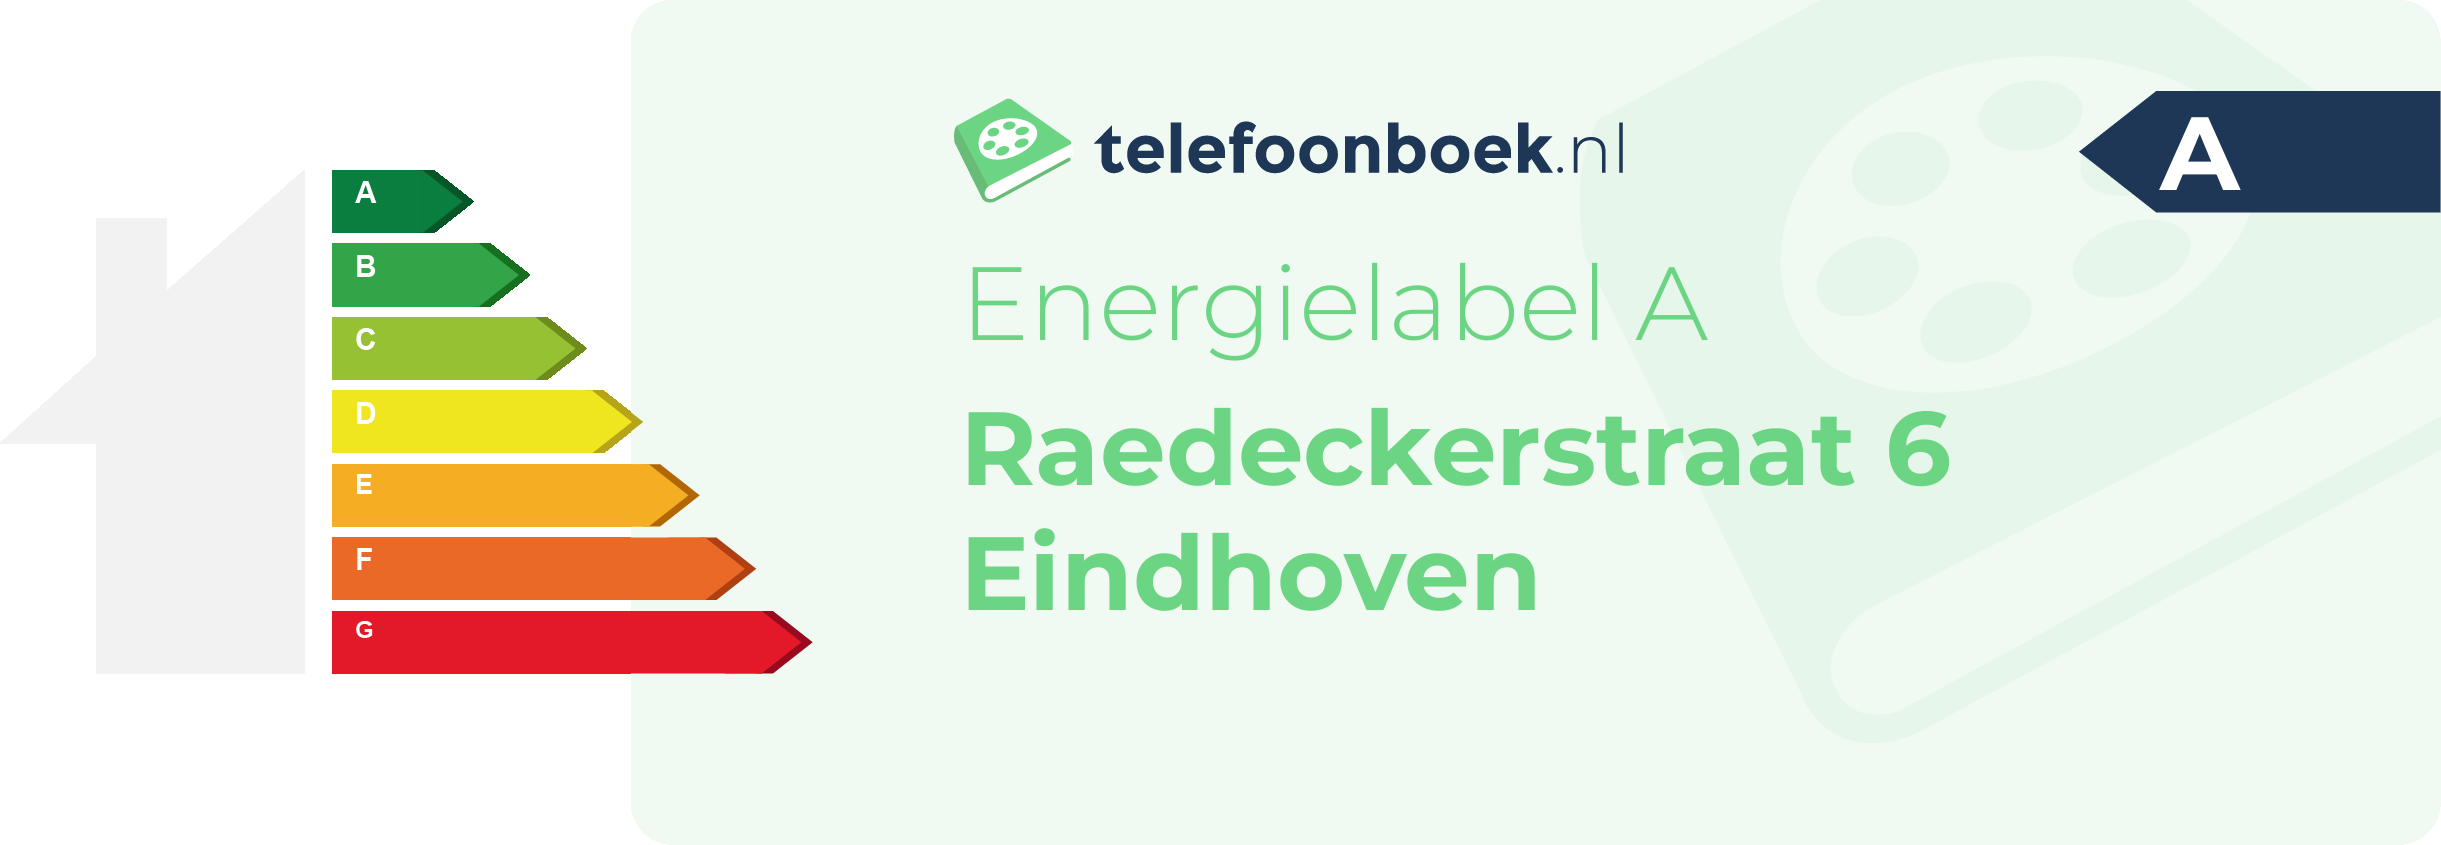 Energielabel Raedeckerstraat 6 Eindhoven